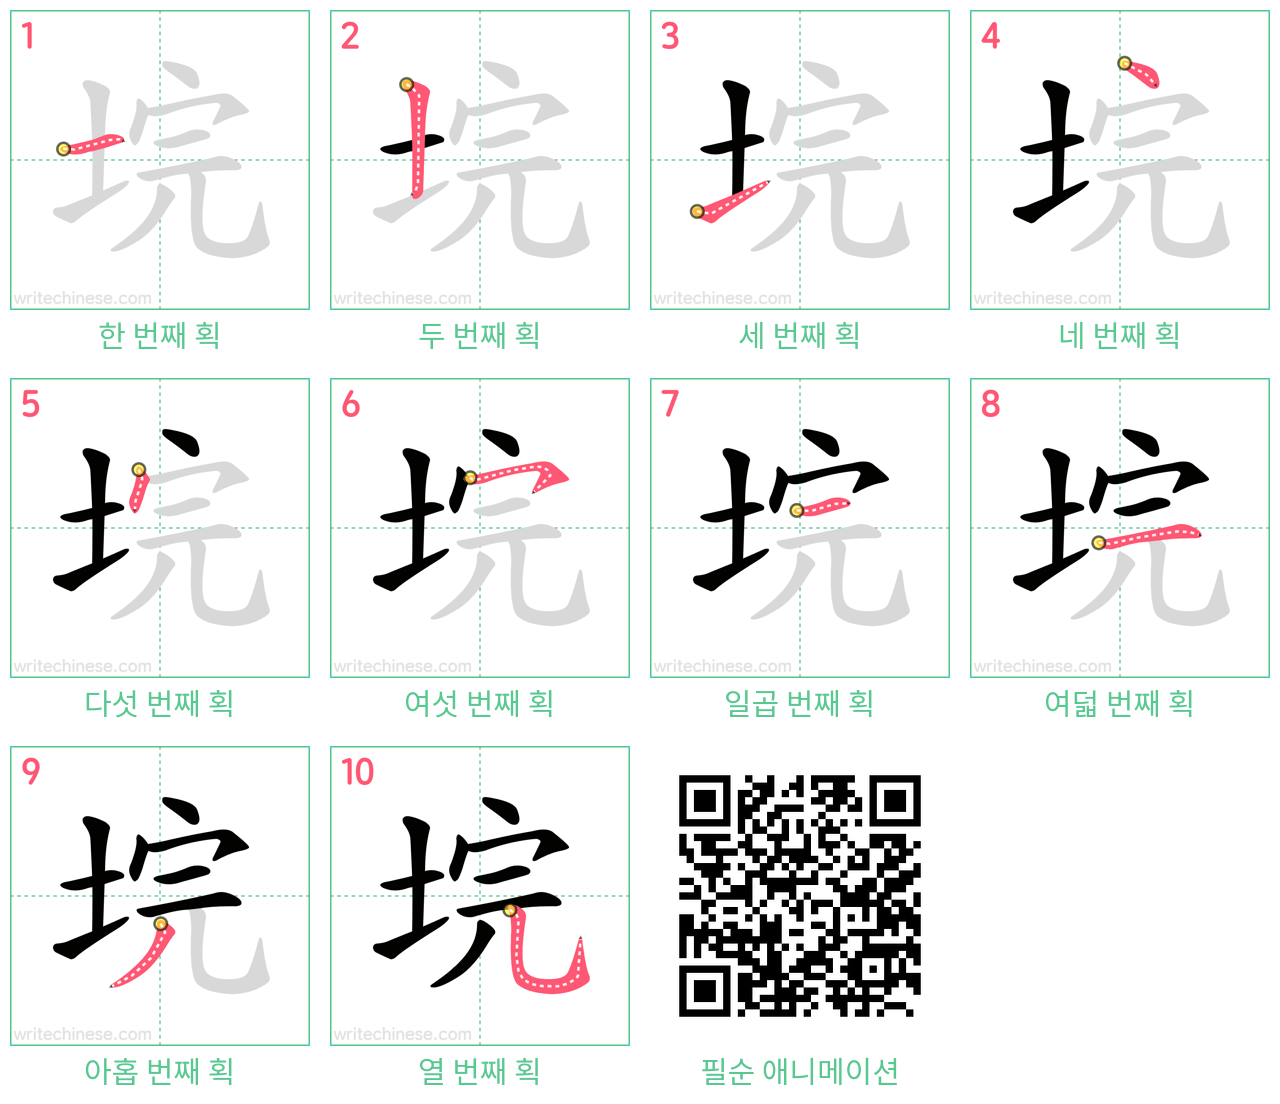 垸 step-by-step stroke order diagrams